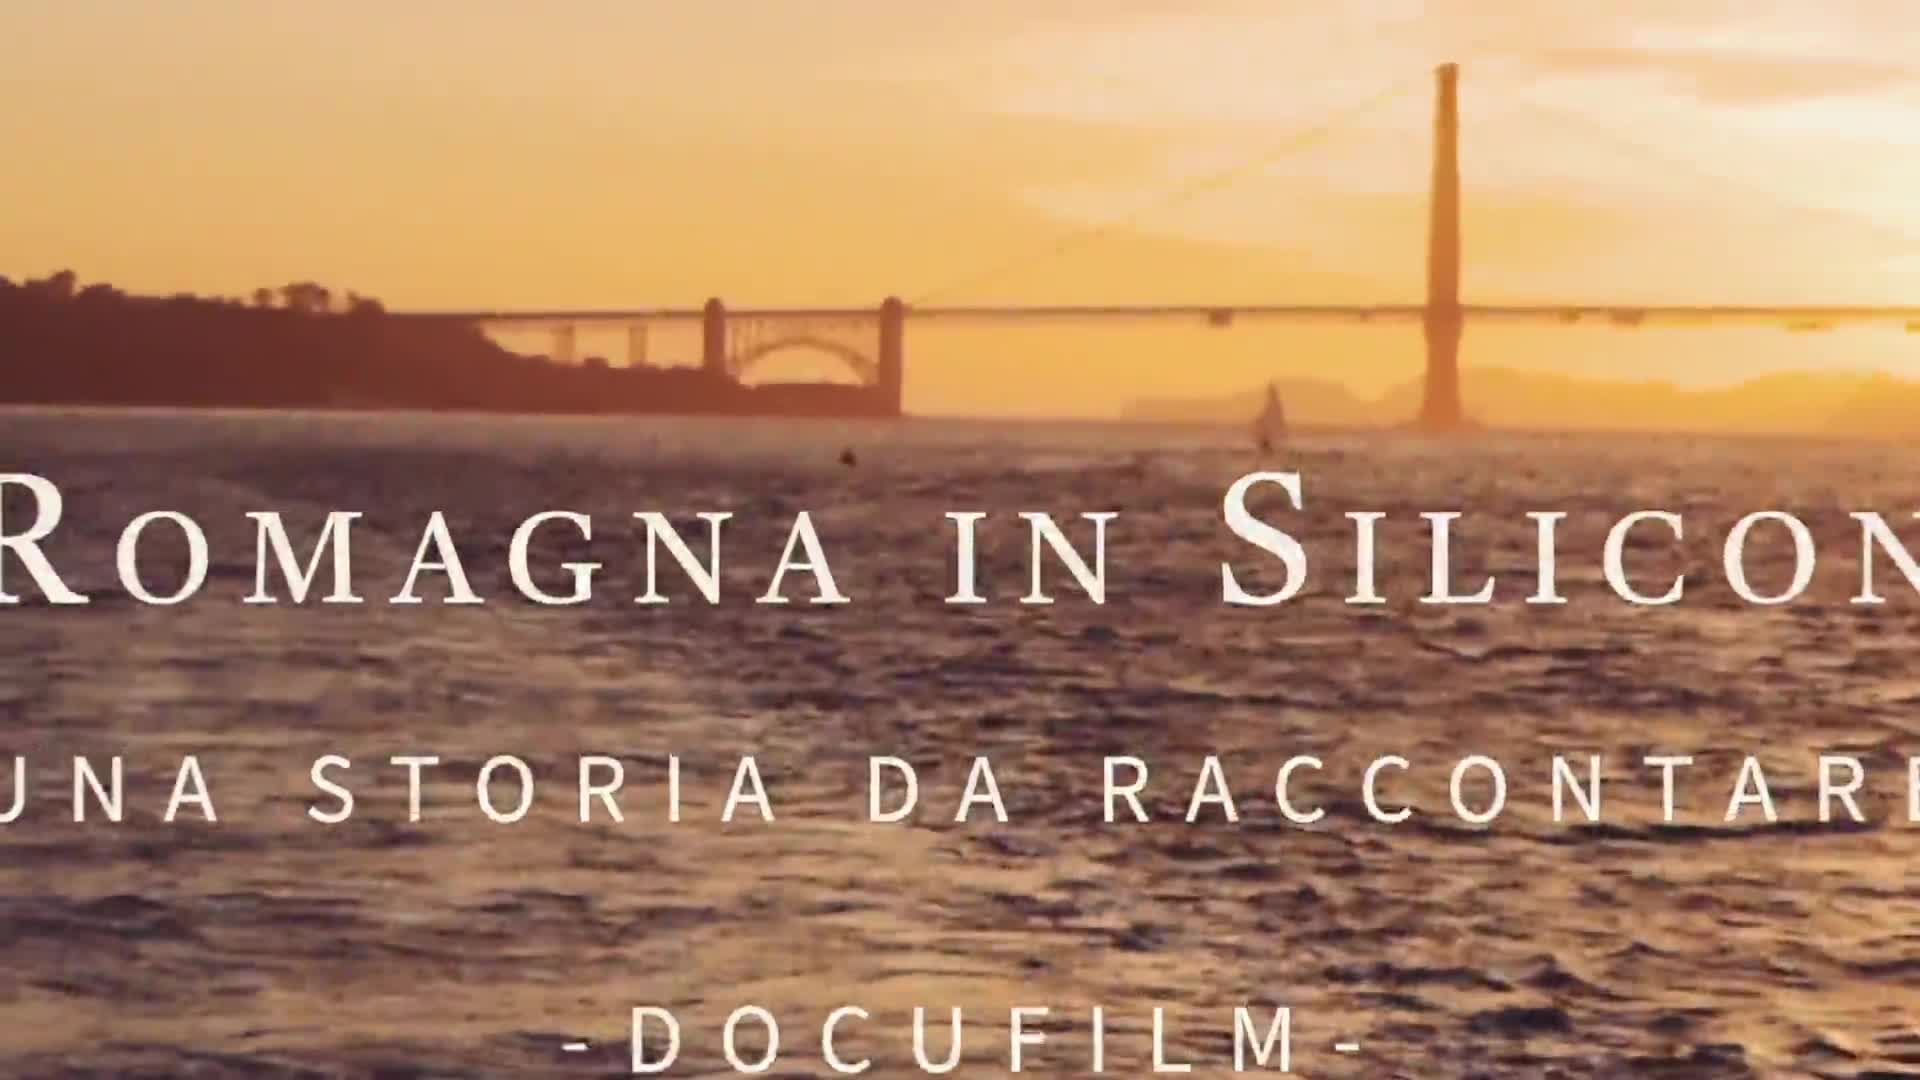 L'Emilia-Romagna in Silicon Valley: una storia da raccontare - Trailer - immagine